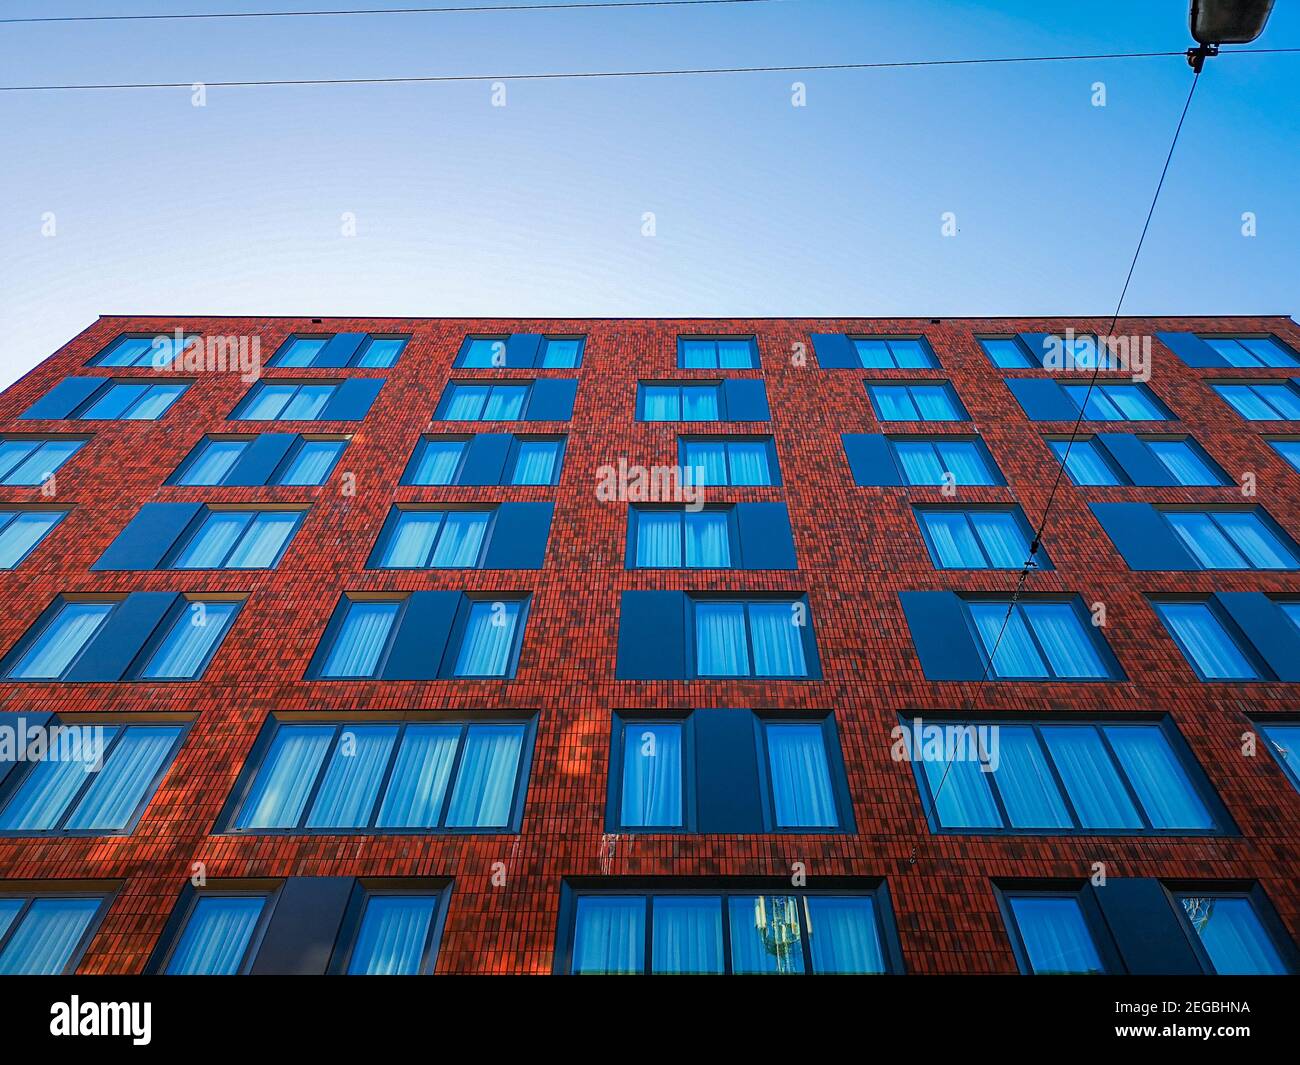 Wroclaw août 6 2019 vue vers le haut de la façade du bâtiment avec briques rouges et rideaux bleus dans les fenêtres Banque D'Images